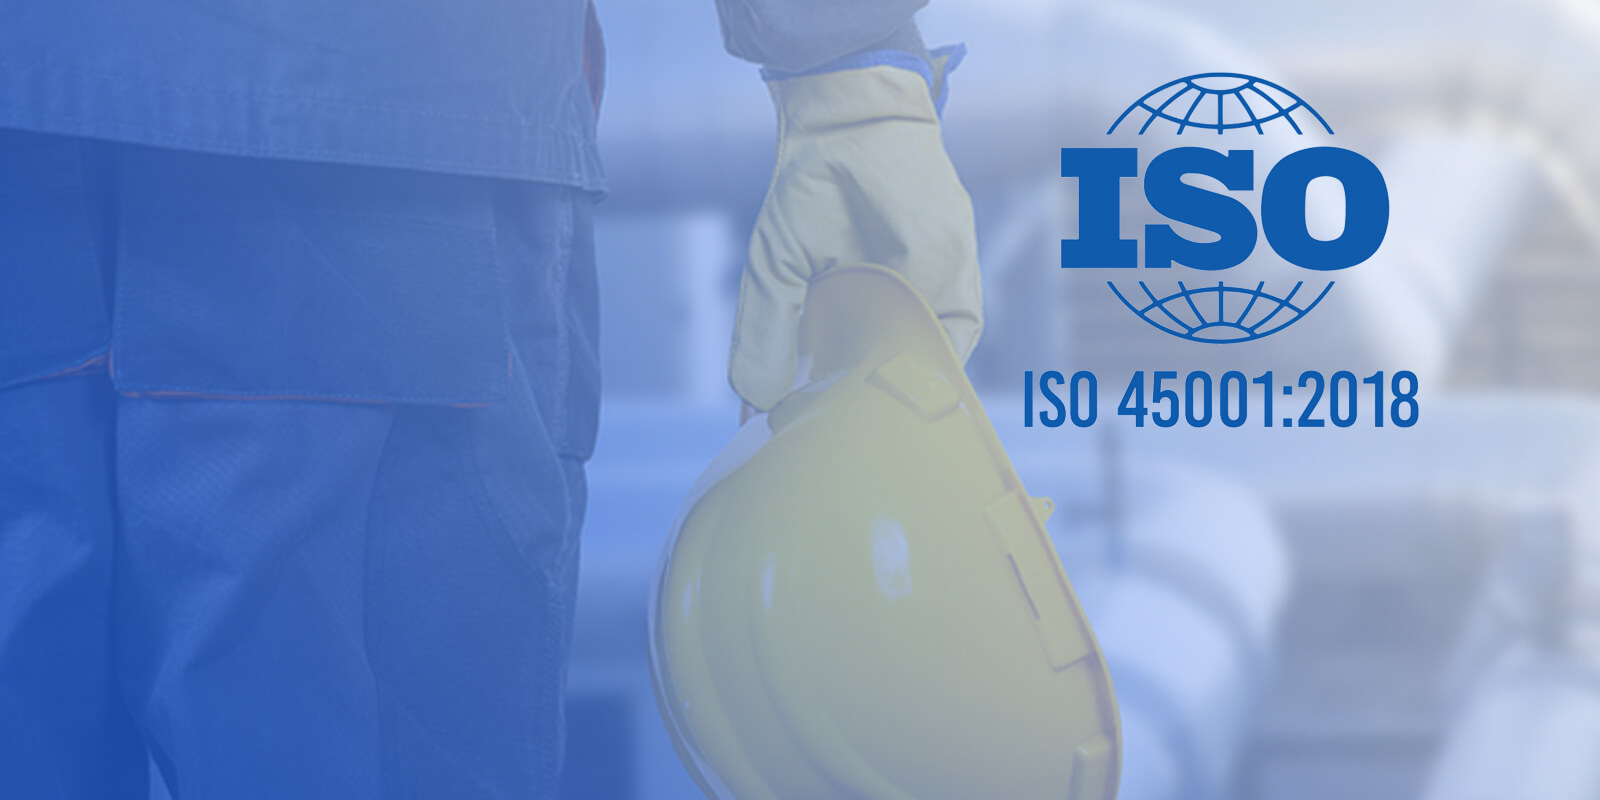 ISO 45001:2018 e la transizione da BS OHSAS 18001:2007